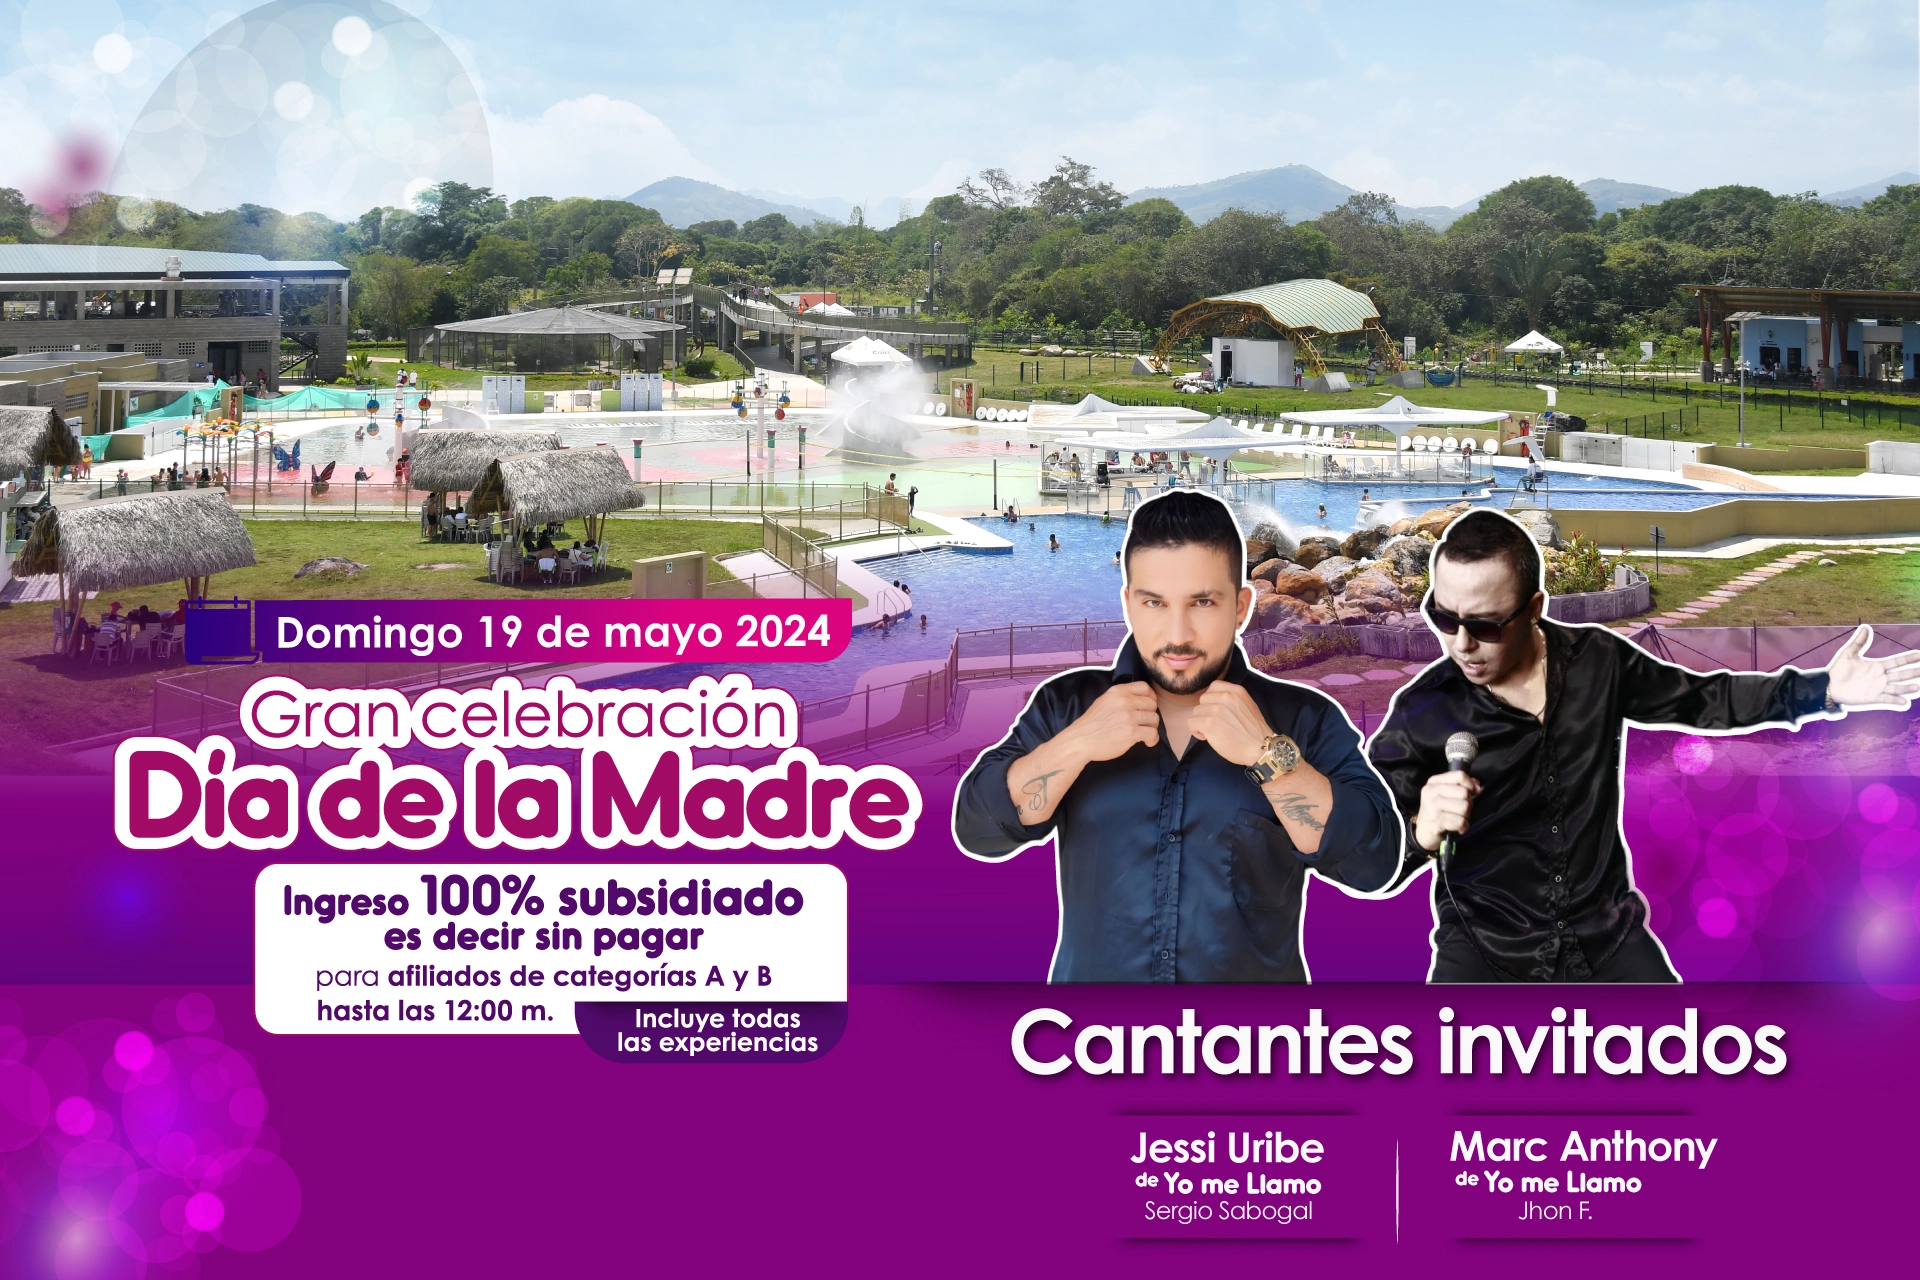 Baner promocional evento día de la madre con foto de fondo del Parque Caiké, fotografía del doble Jessi Uribe y del doble de Marc Antony, cantantes invitados